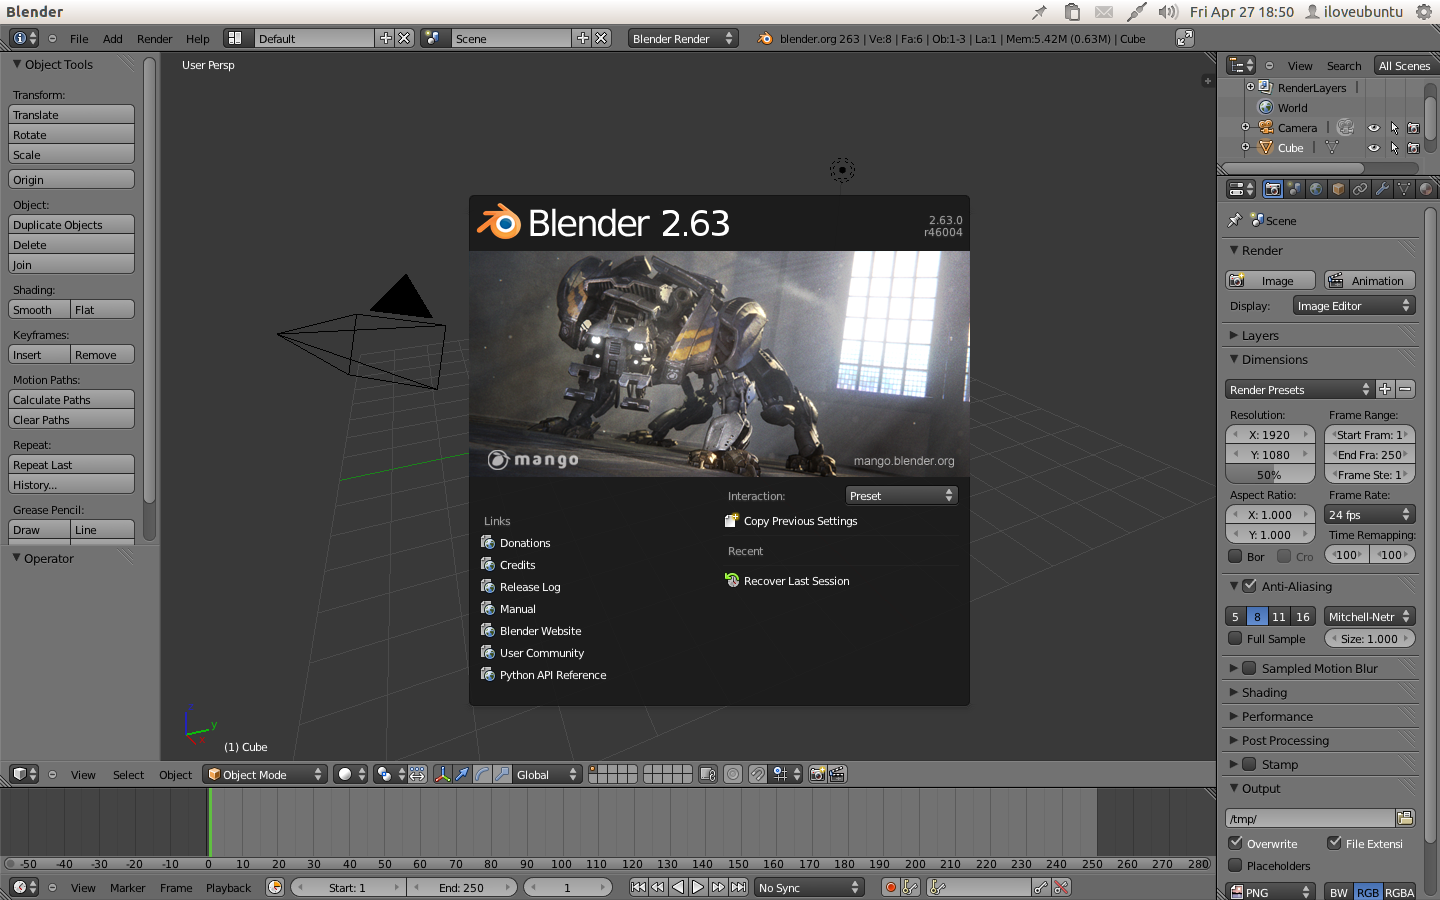 对比一下 Blender 和 Maya 两款软件的区别